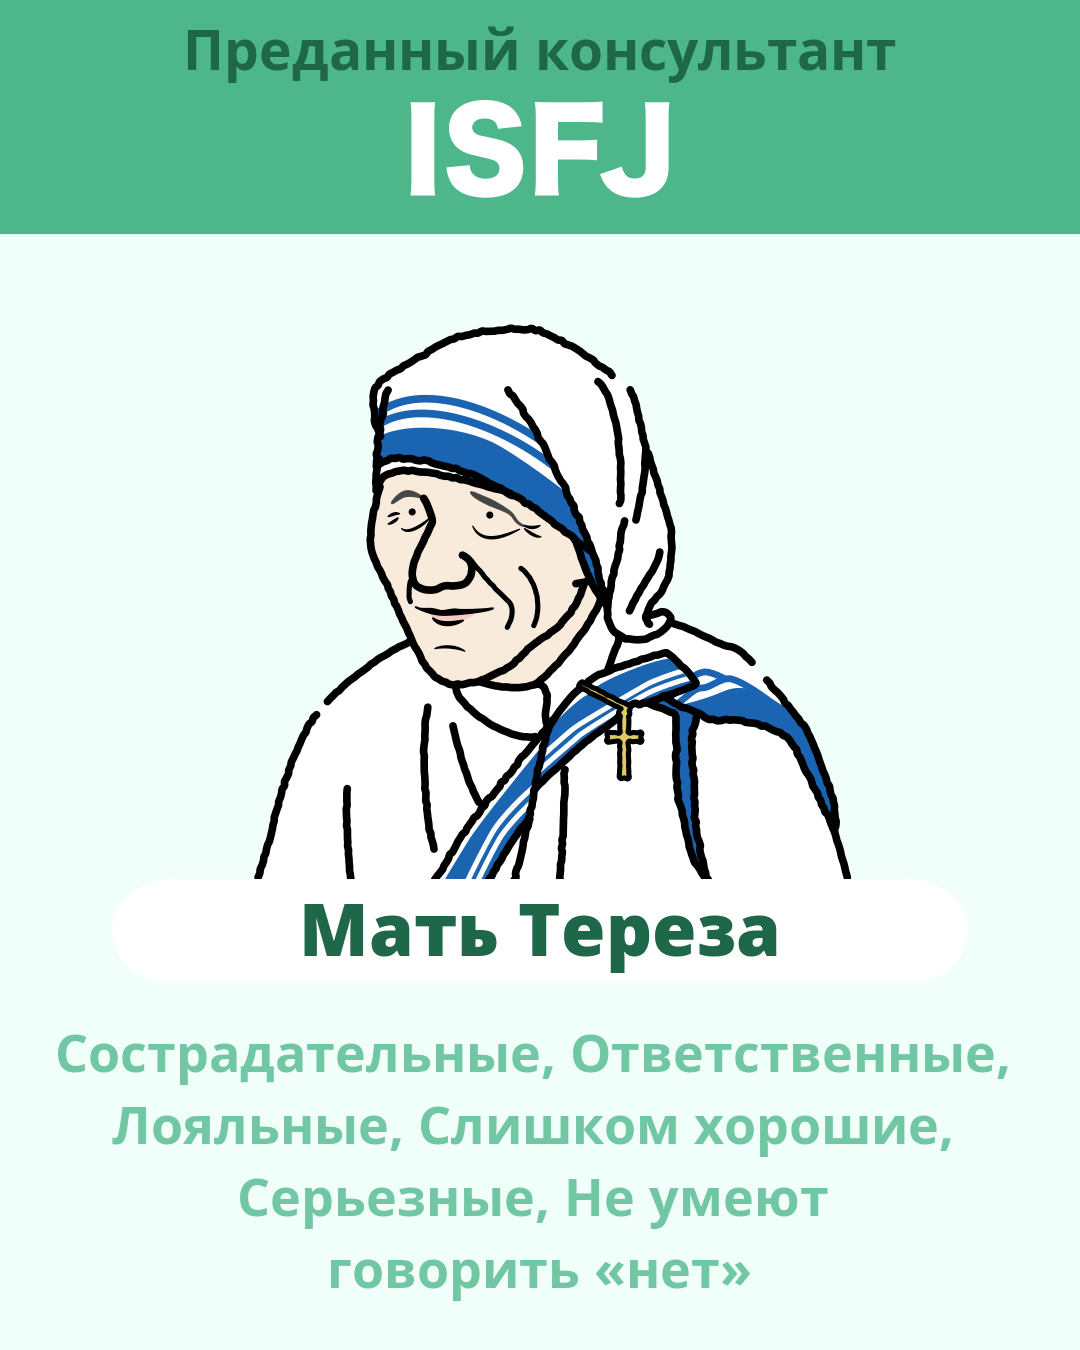 Мать Тереза - ISFJ